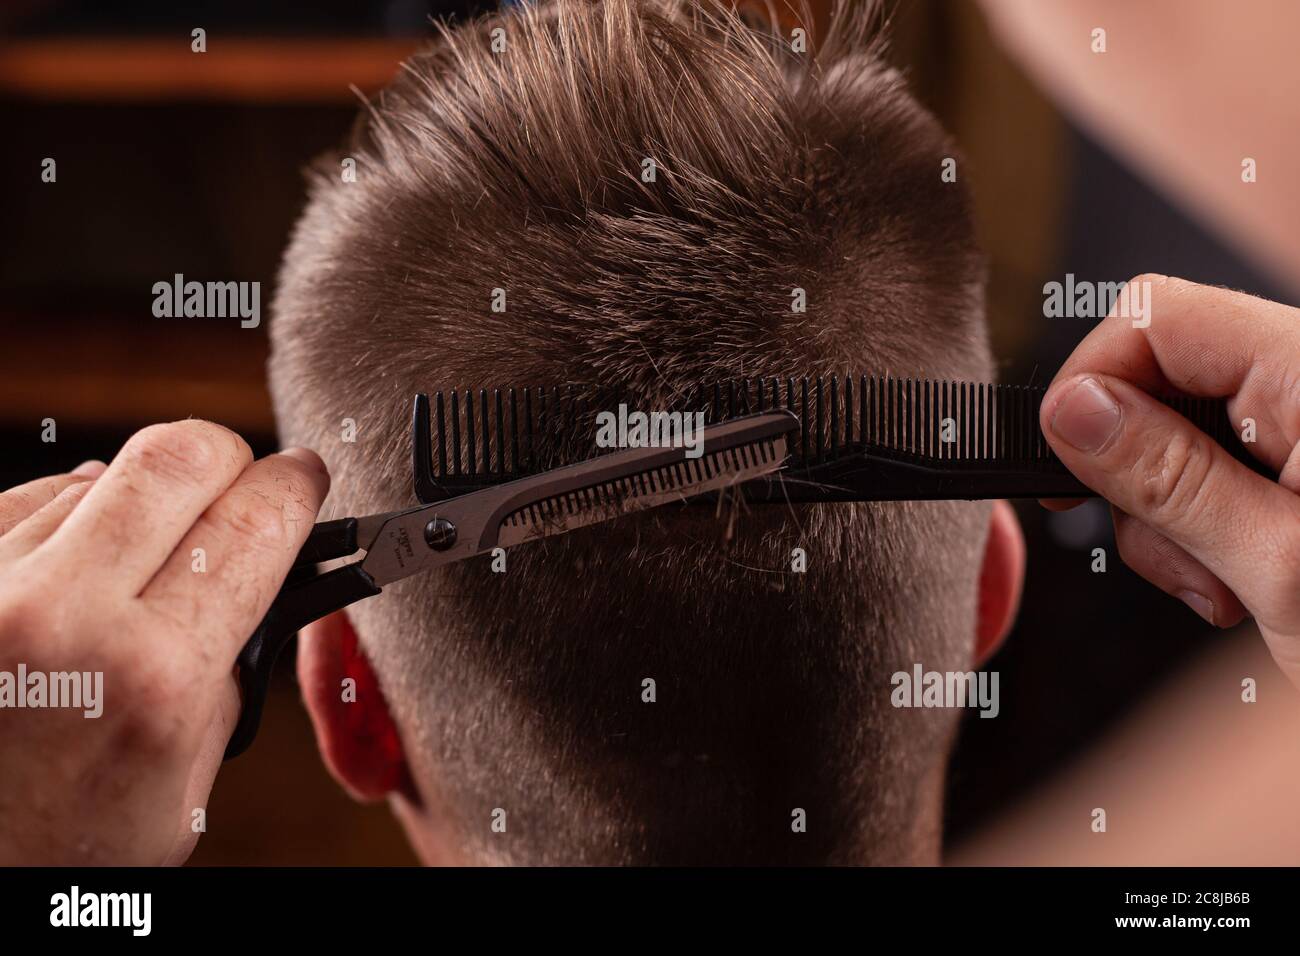 mens haircut tools